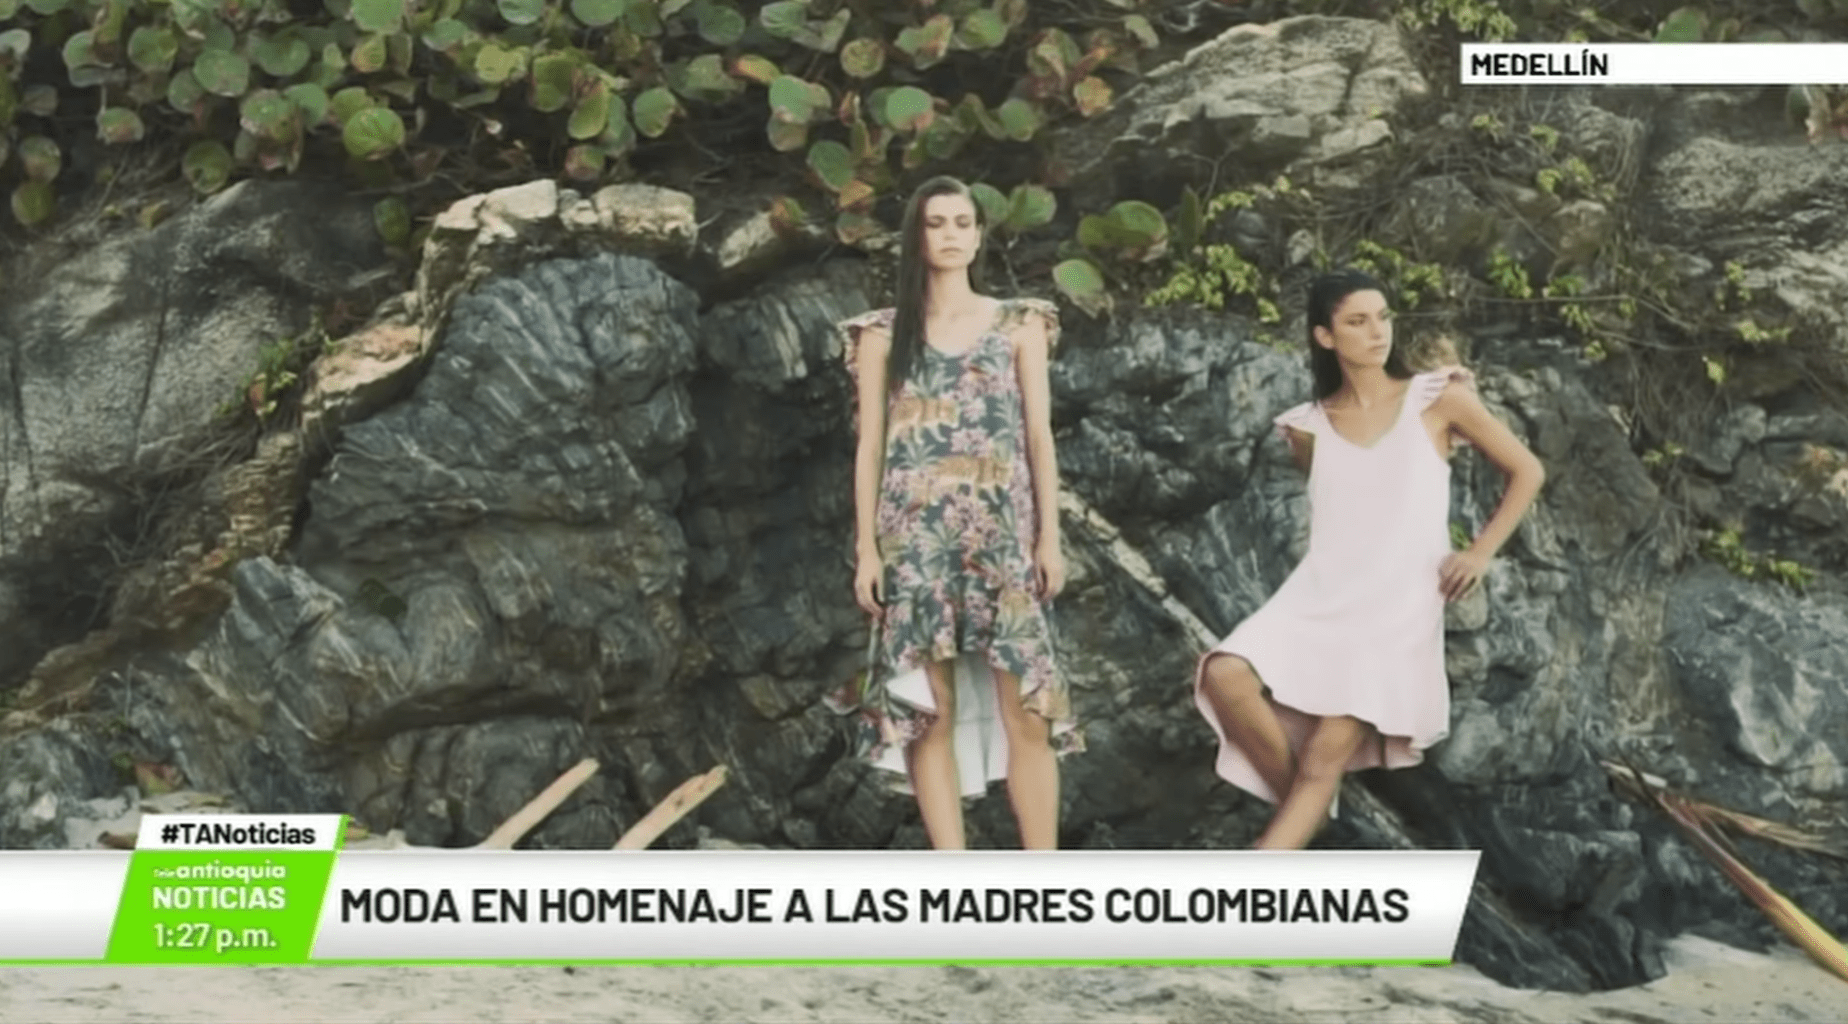 Moda en homenaje a las madres colombianas